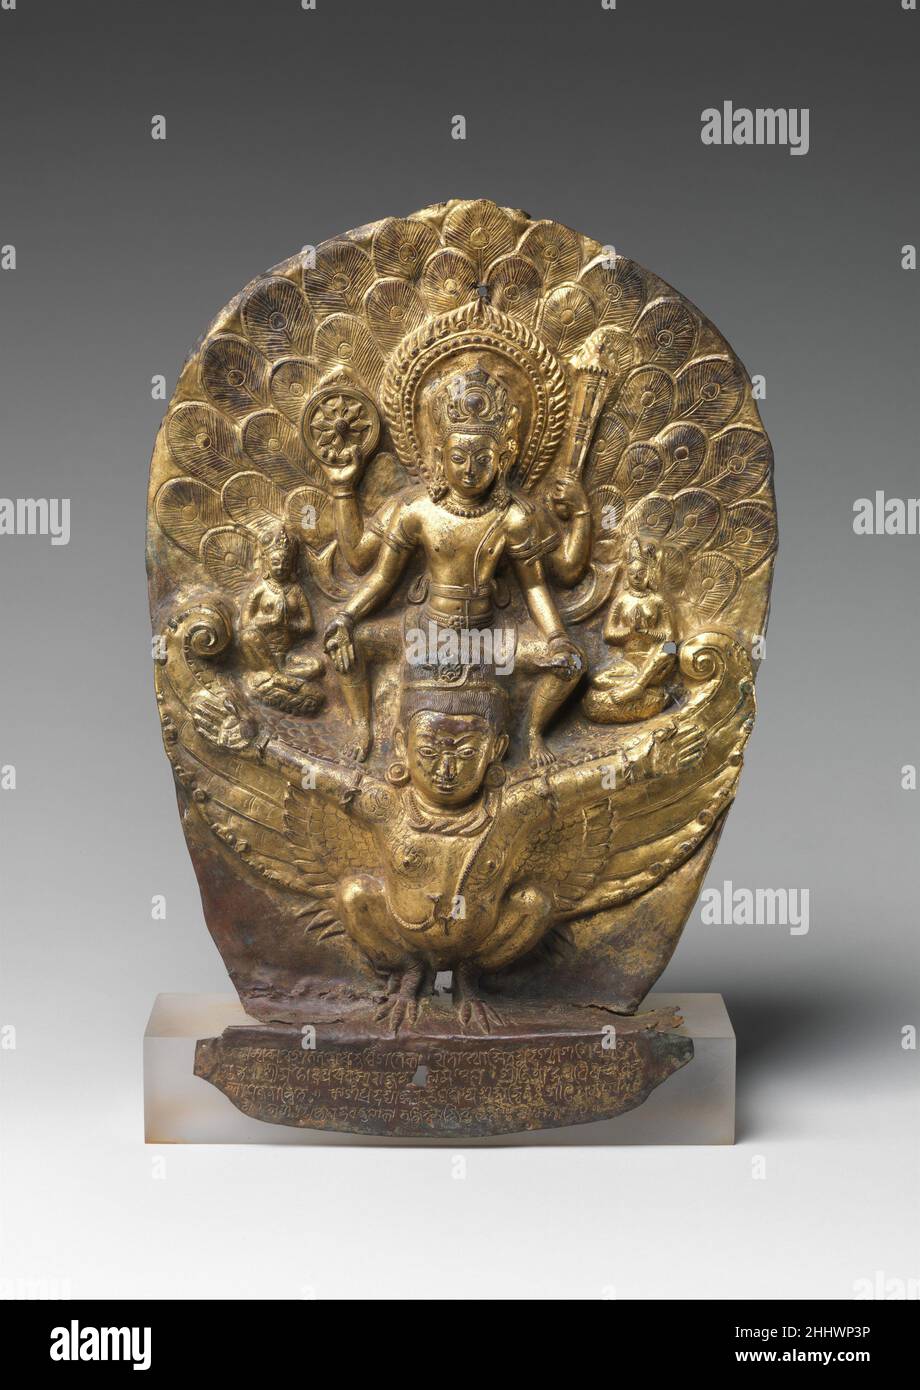 Vishnu Riding sur Garuda en date du 1004 Népal ce rare exemple précoce de repoussé népalais dépeint le dieu Vishnu en vol à cheval sur son mont semi-humain, Garuda.Il affiche un discus enflammé, un club et un conch.Au-dessus de ses ailes se trouvent des figures diminutives de ses épouses.Vishnu était la première déité du clan Gupta de l'Inde du Nord, et Garuda leur symbole dynastique, une association royale qui continuait avec le royaume de Lichavi au Népal.L'inscription ici fait référence à Vishnu Garudadhvaja (dont la bannière est Garuda), le symbole Gupta.Ce soulagement, le plus ancien exemple connu en dehors du Népal, a servi comme un Banque D'Images